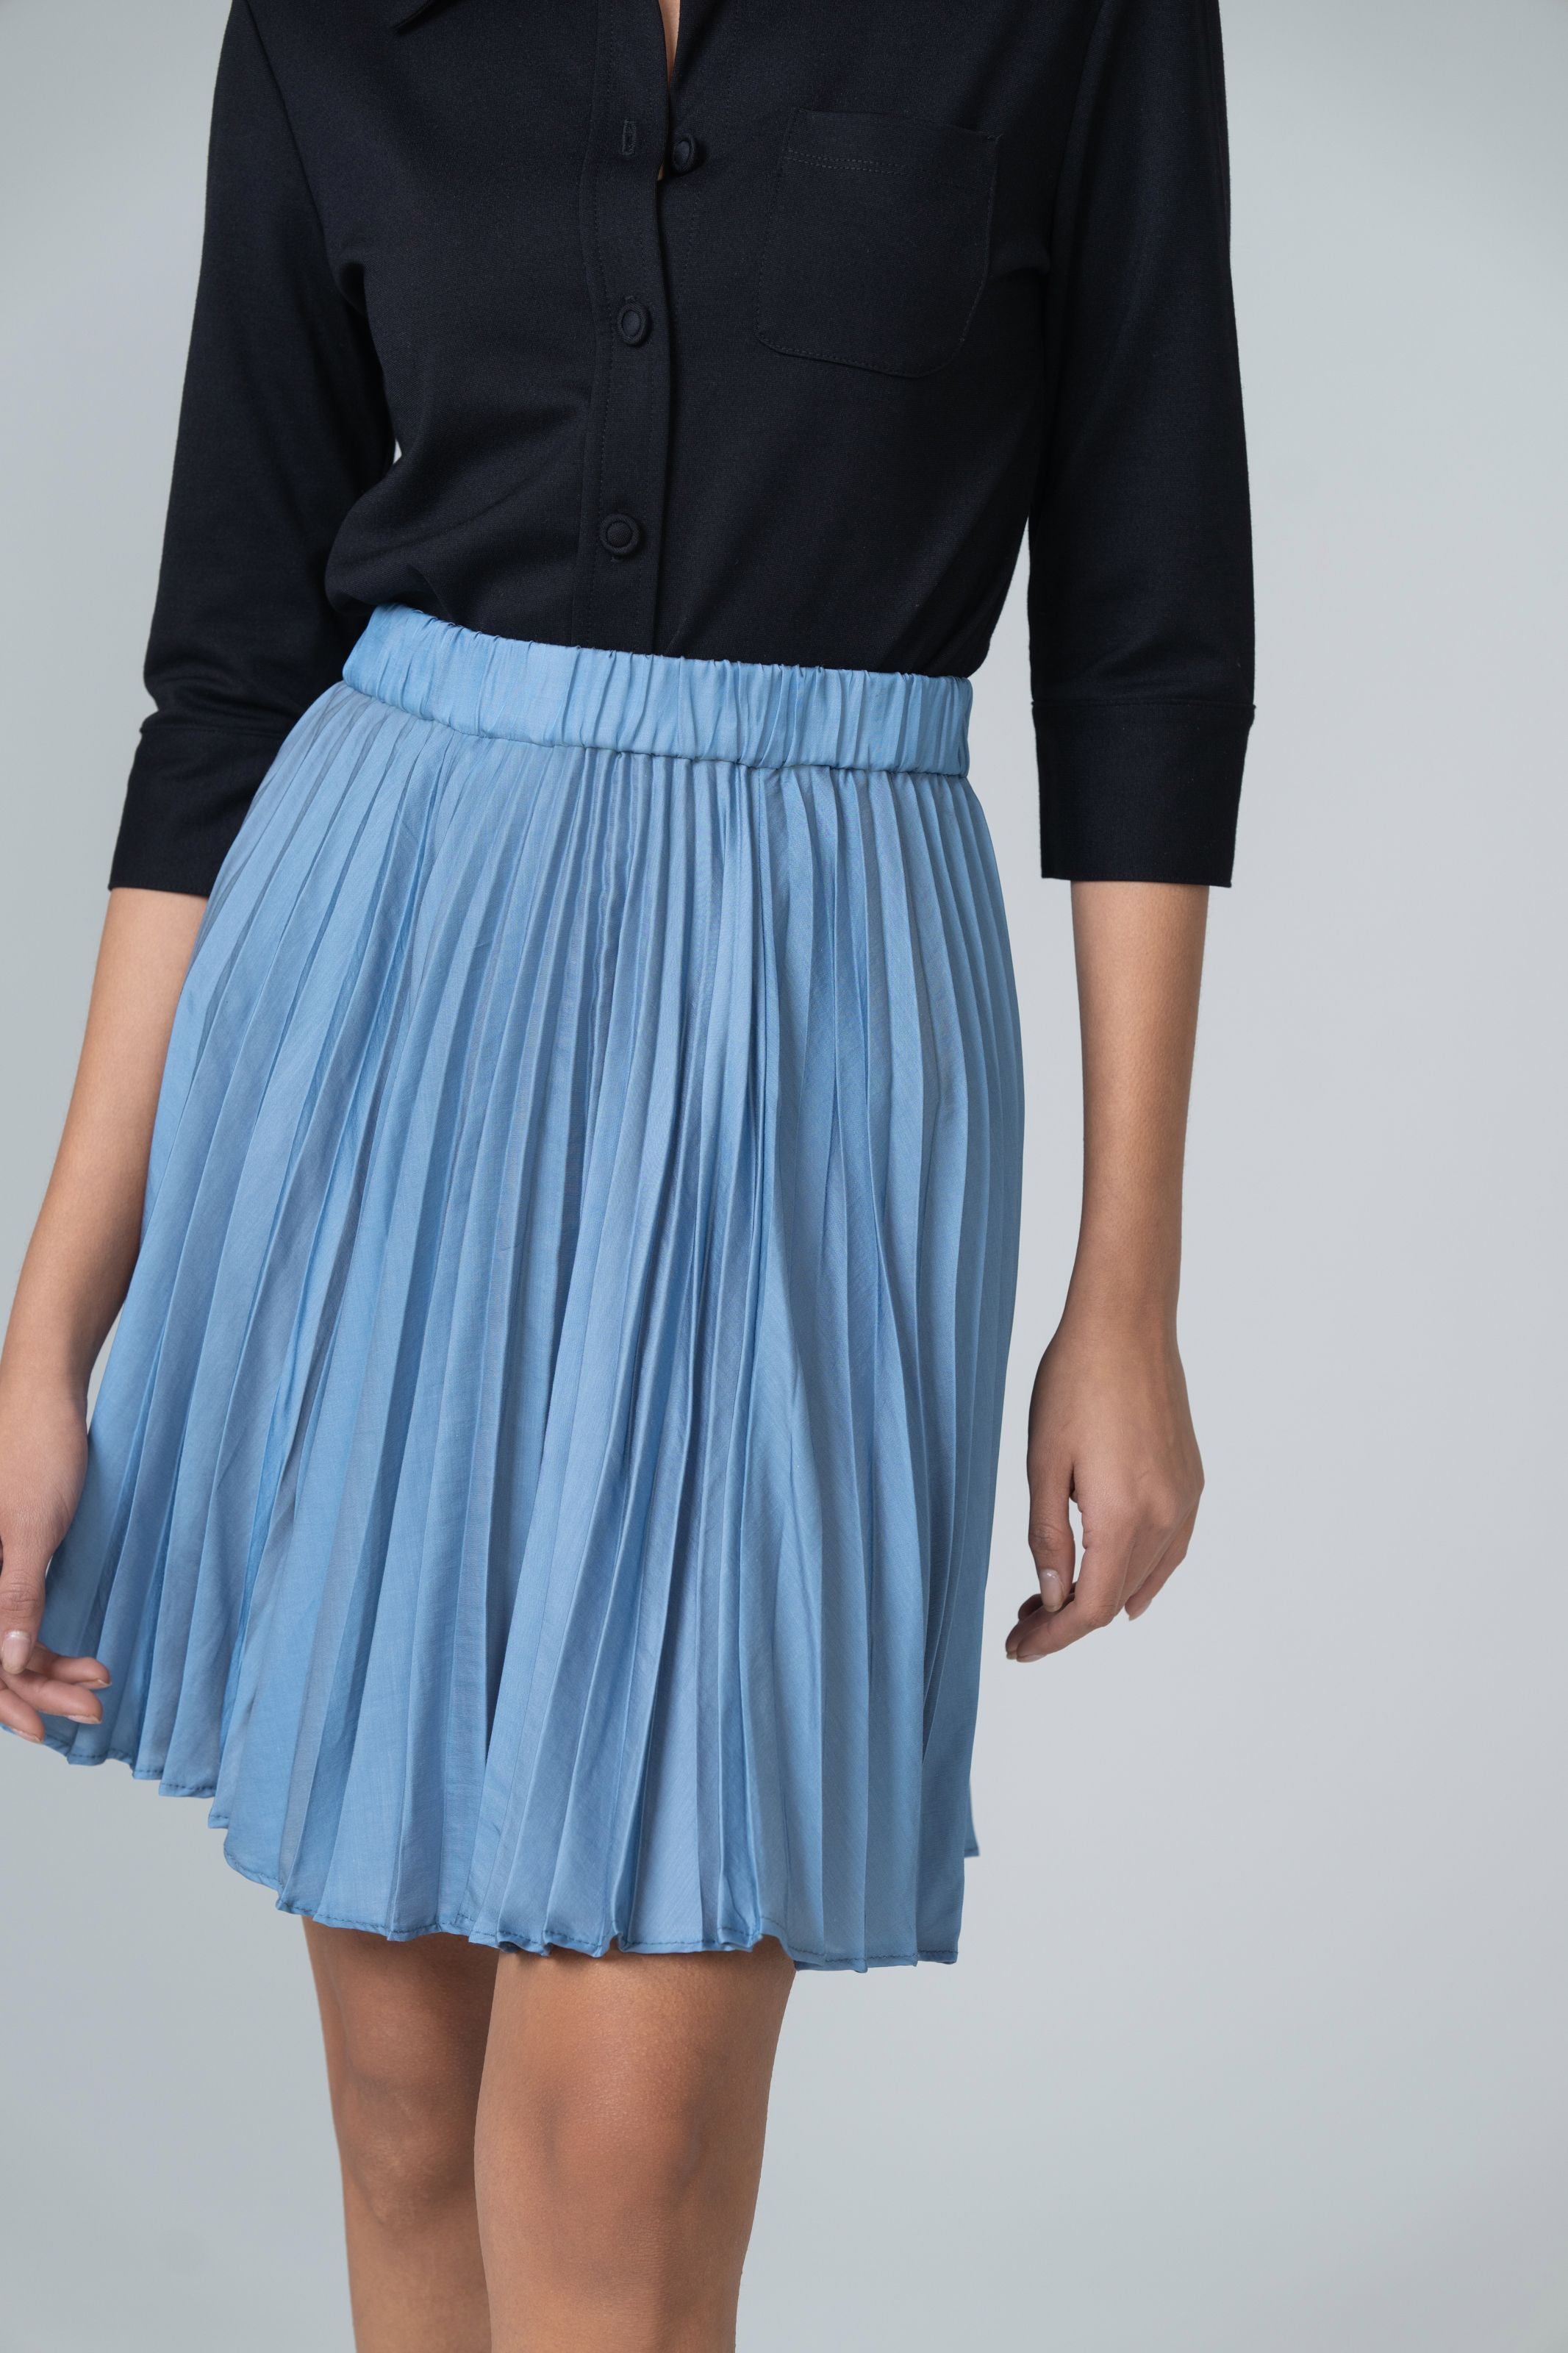 Pleated Short Skirt - Light Blue - Olivvi World